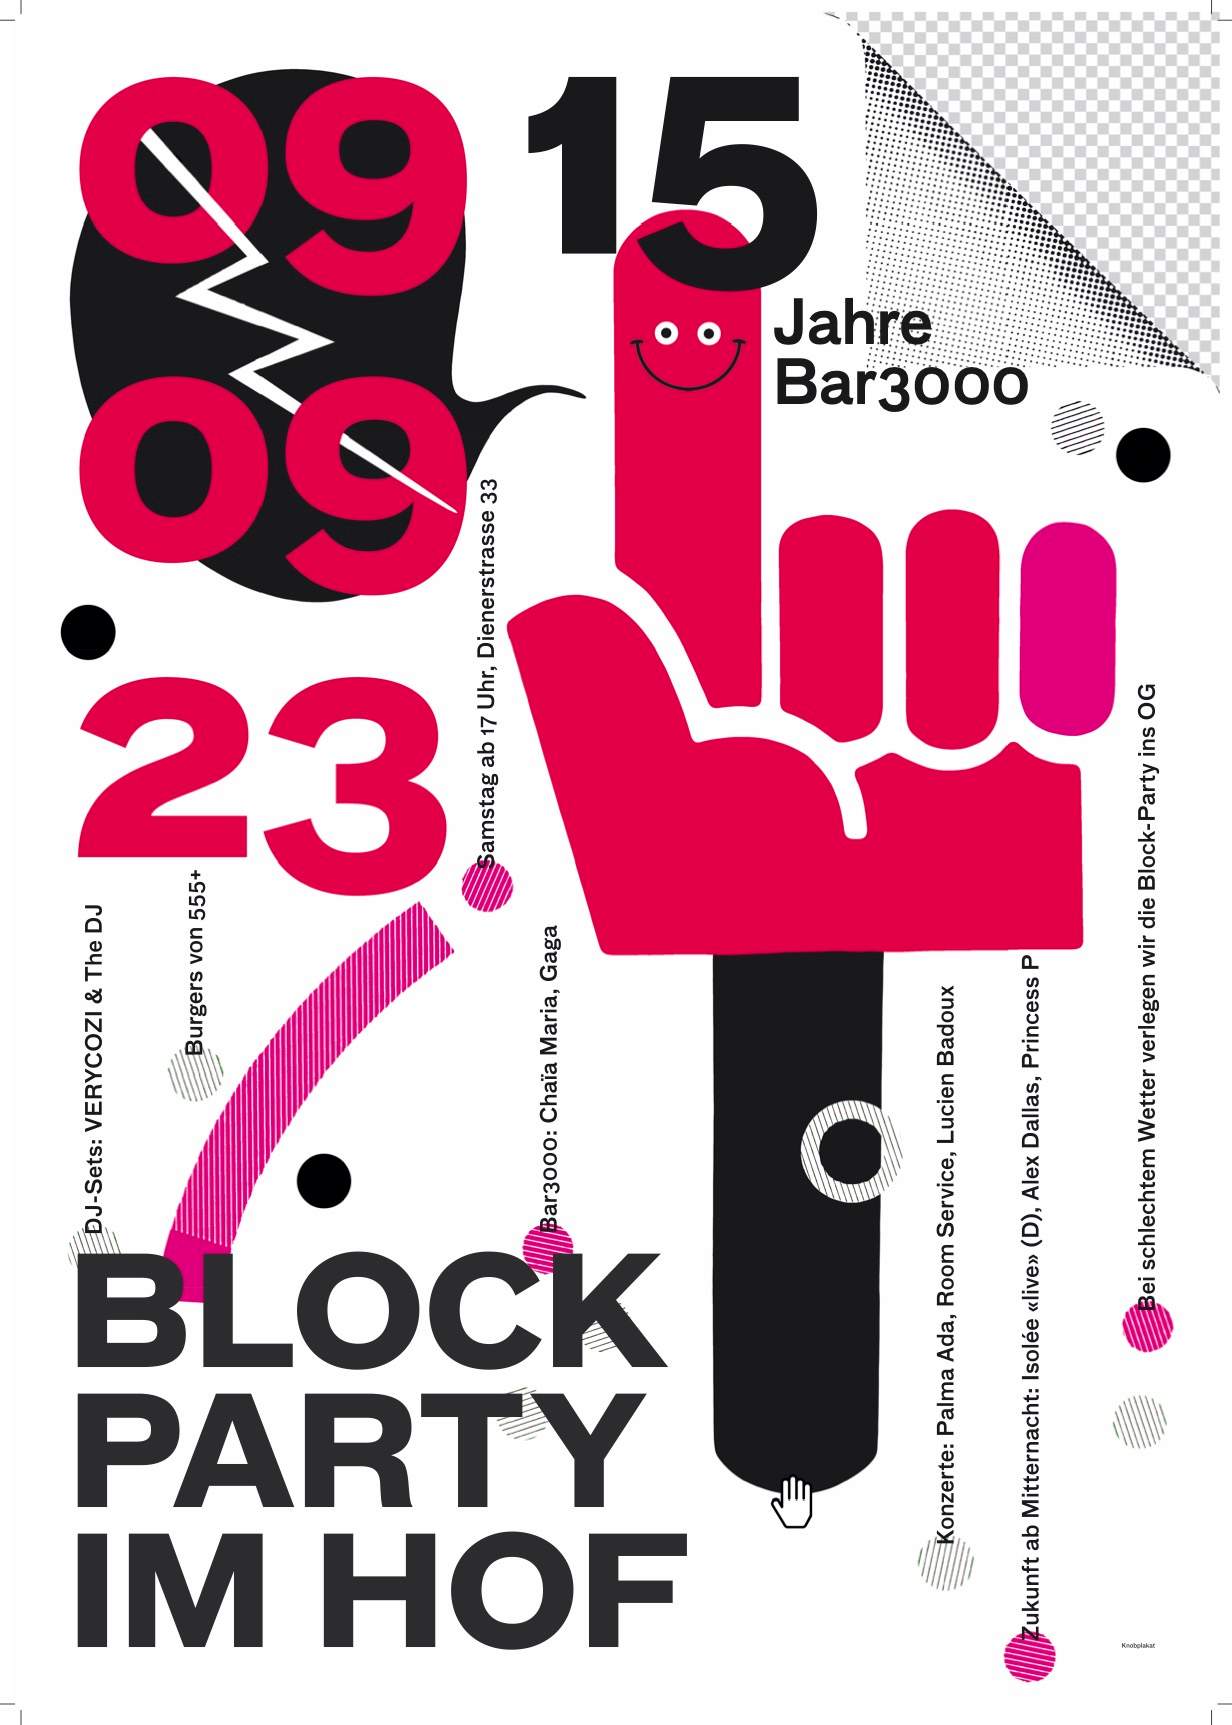 15 Jahre Bar3000: Block-Party im Hof & Clubnacht - フライヤー表